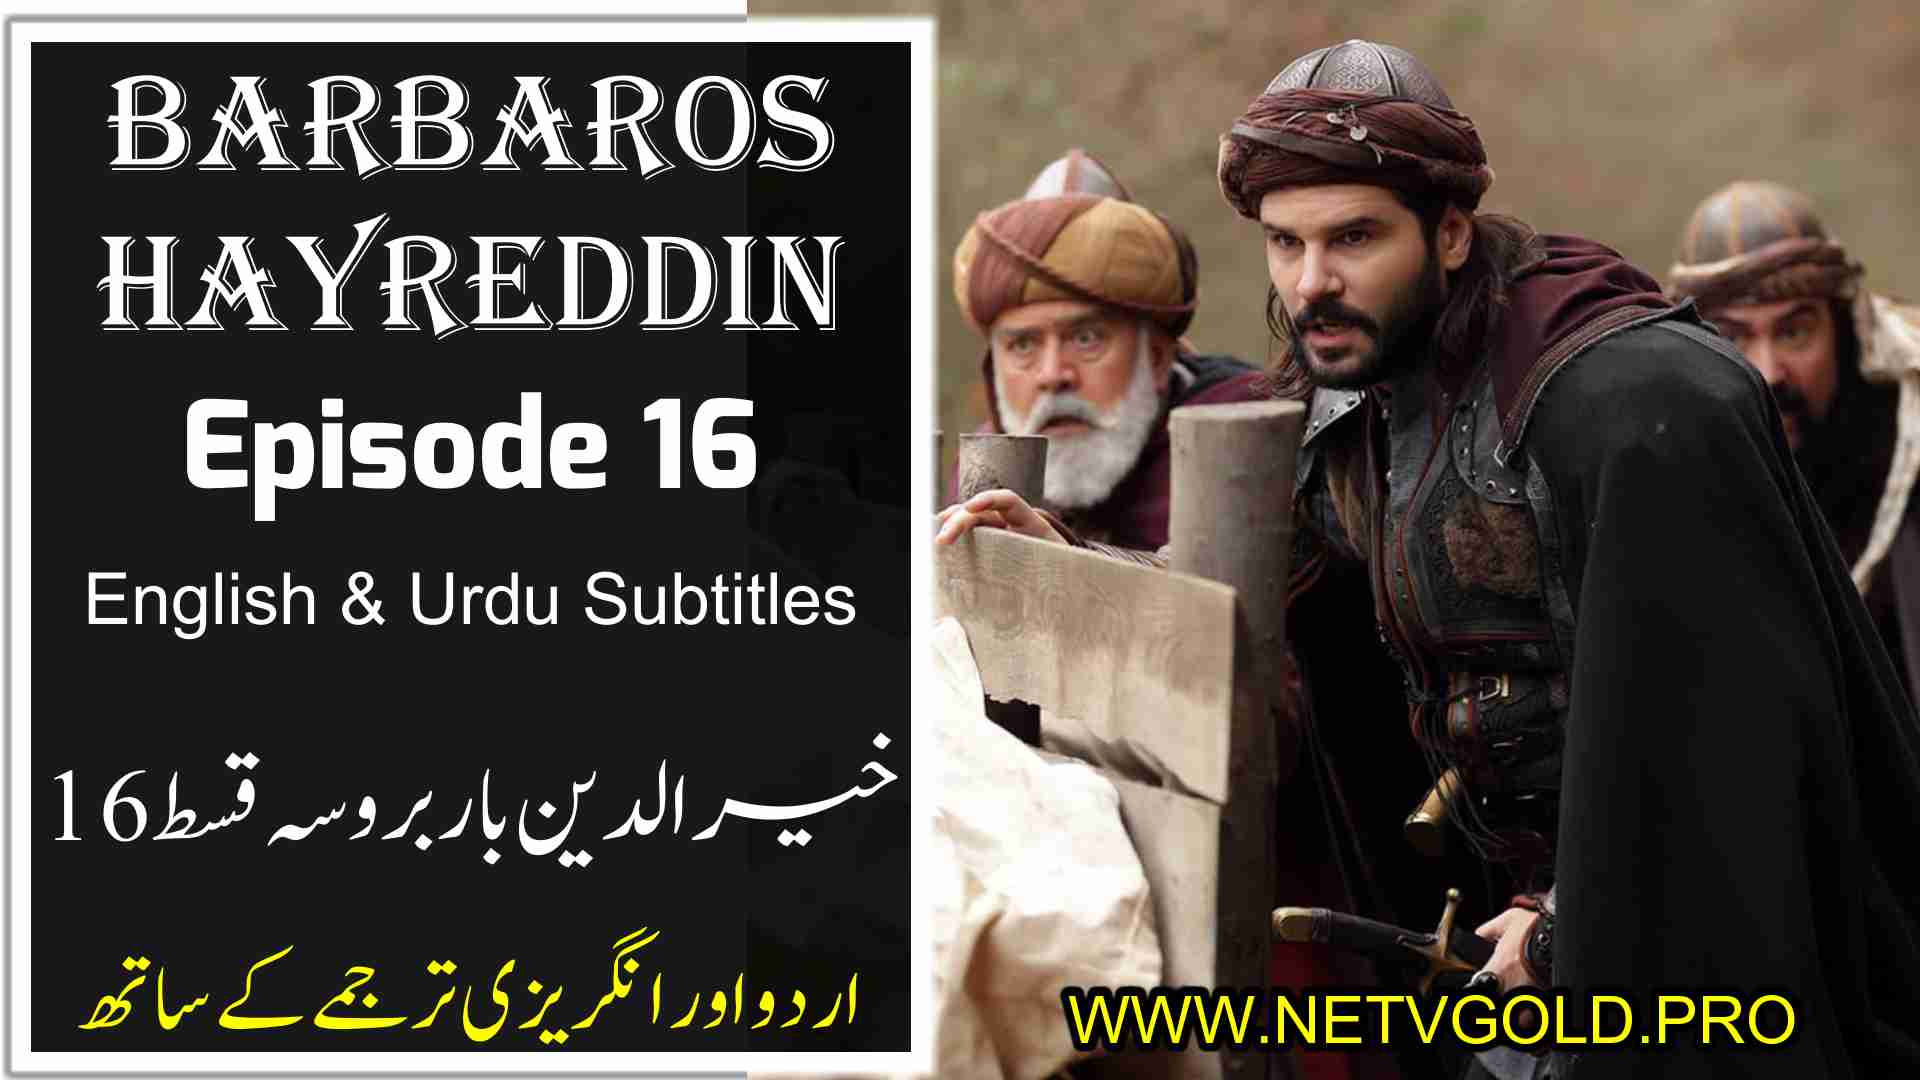 Barbaros Hayreddin Episode 16 with Urdu & English Subtitles